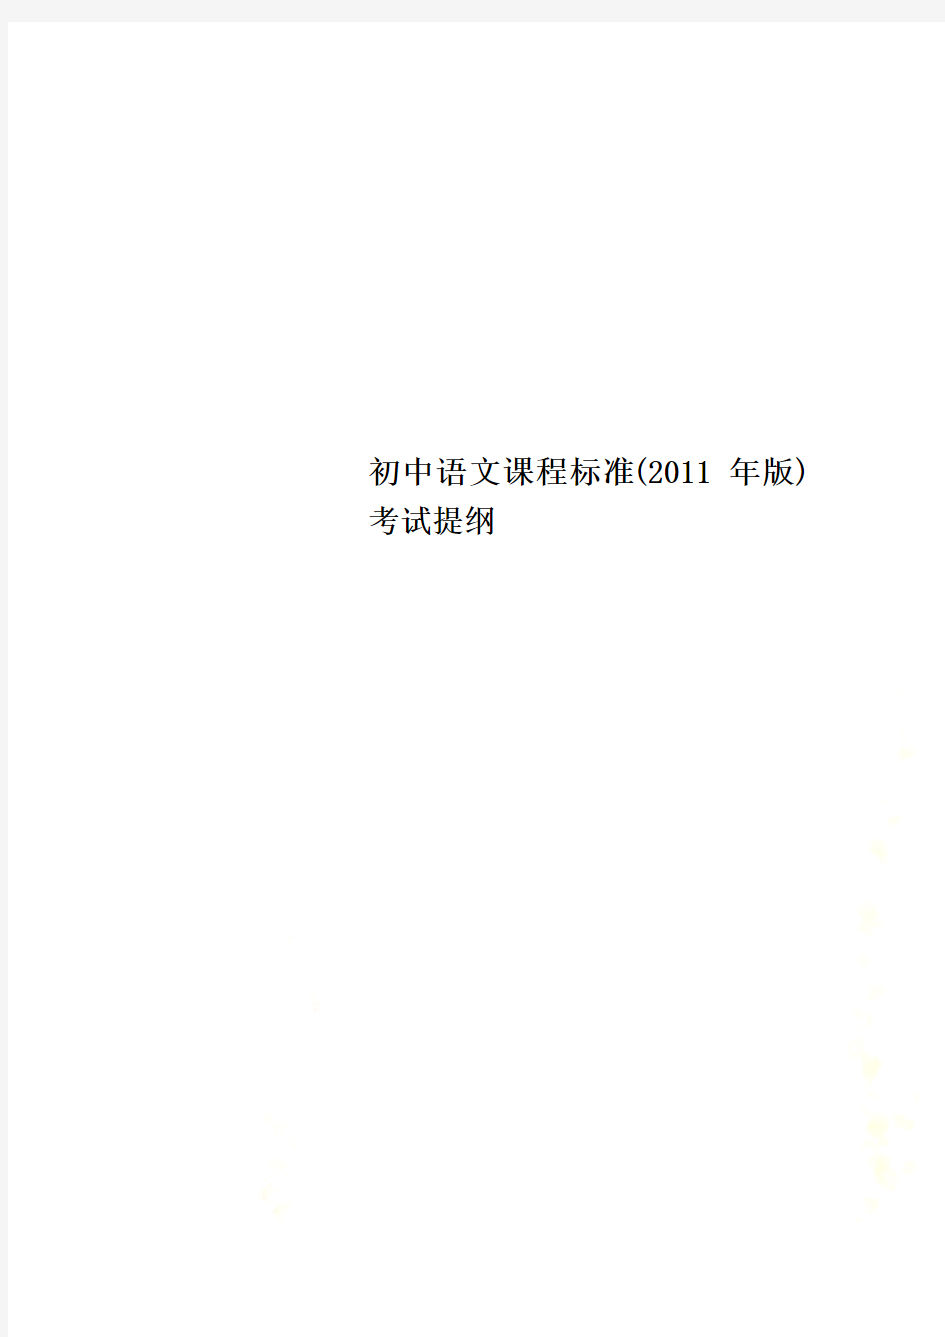 初中语文课程标准(2011年版)考试提纲